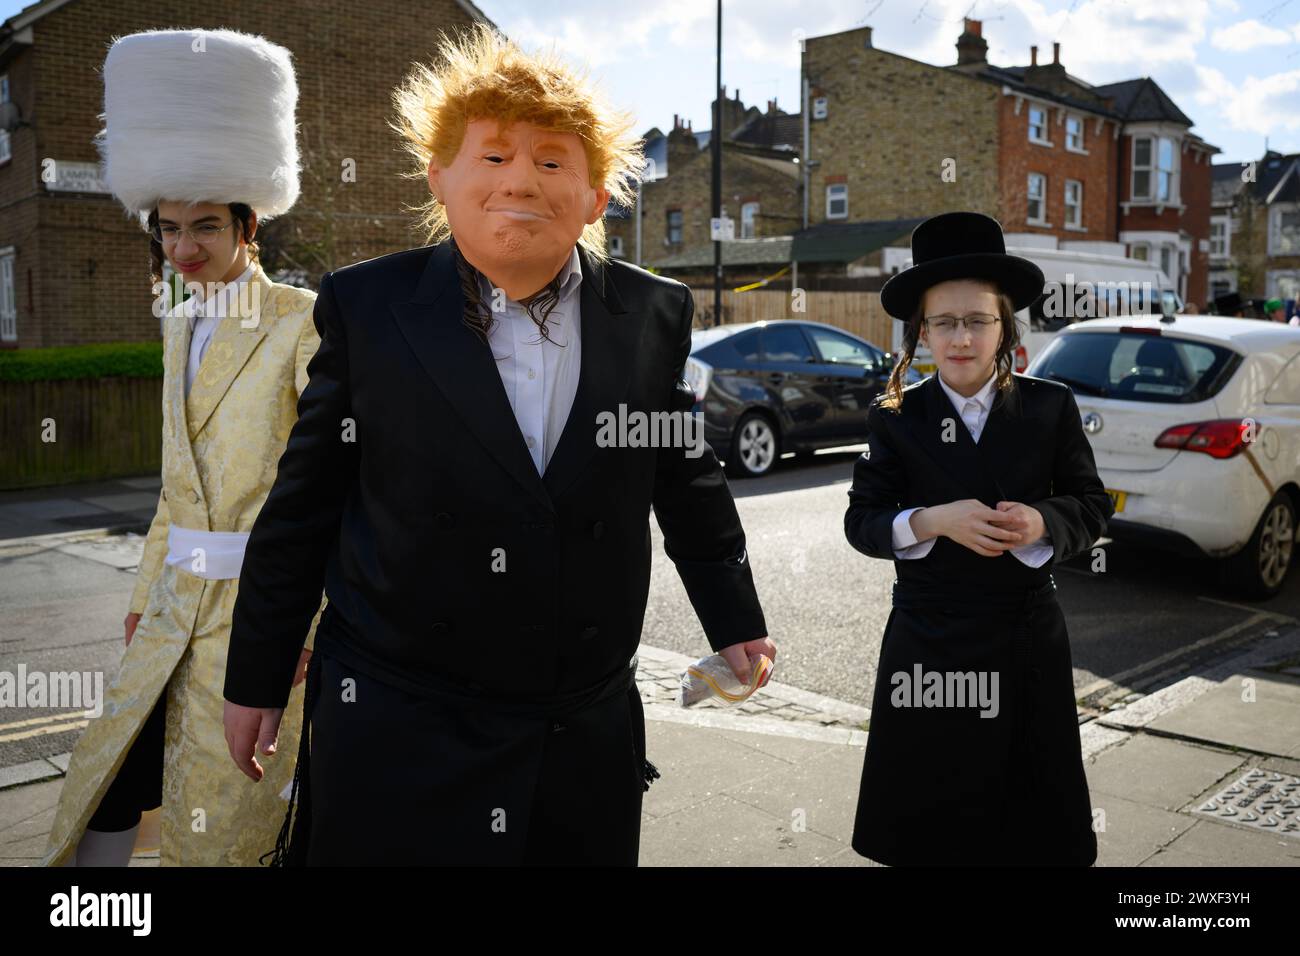 LONDRES, Royaume-Uni, 24 mars. La communauté juive de Stamford Hill, Londres célèbre la fête religieuse de Pourim. Les jeunes hommes dansent dans les rues et les enfants s'habillent de masques et de costumes. Banque D'Images